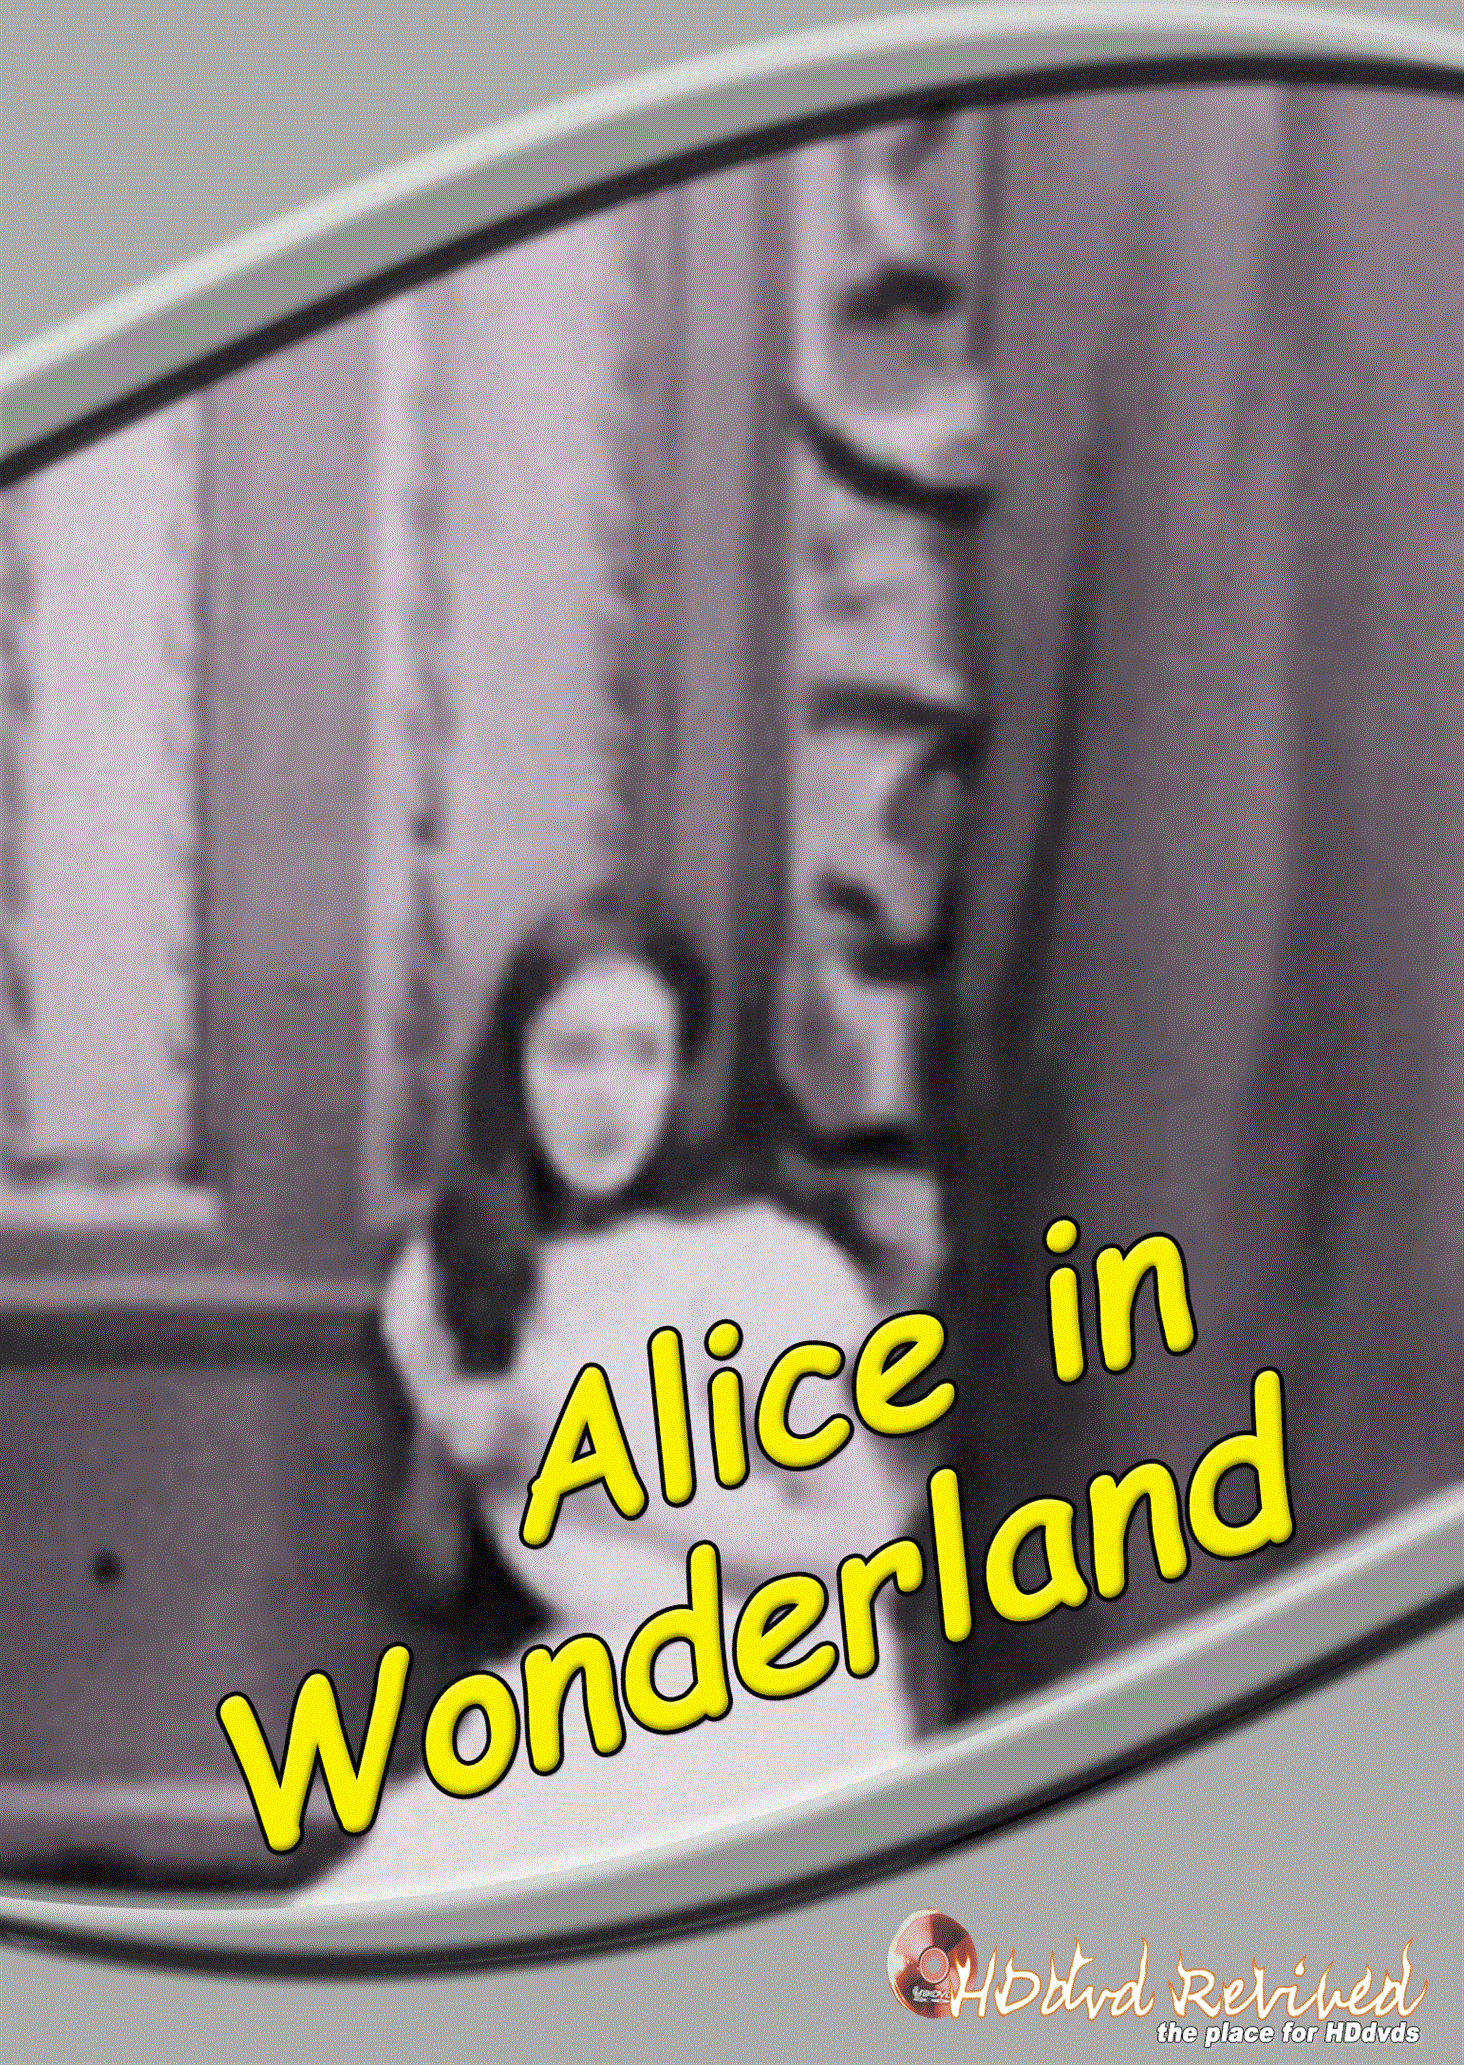 Alice in Wonderland (1915) Standard DVD (HDDVD-Revived) UK Seller